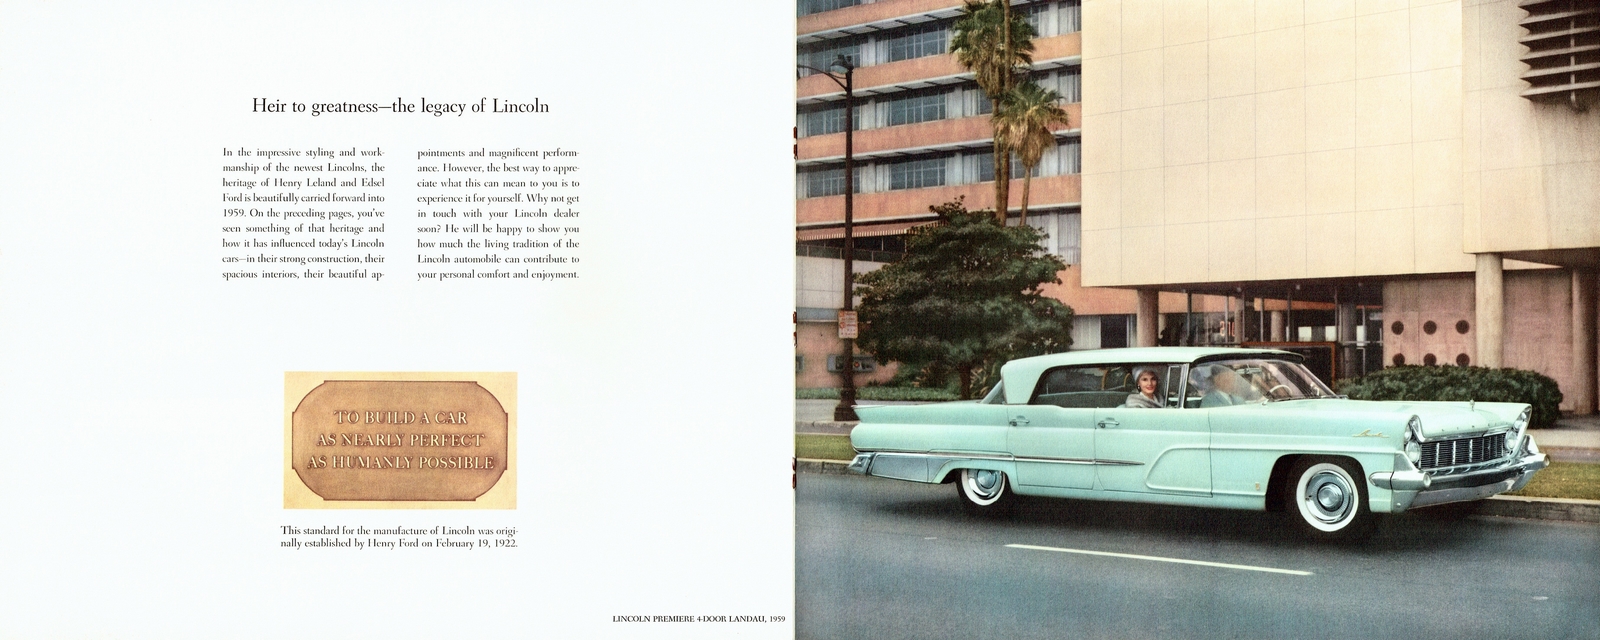 n_1959 Lincoln Mailer-10-11.jpg